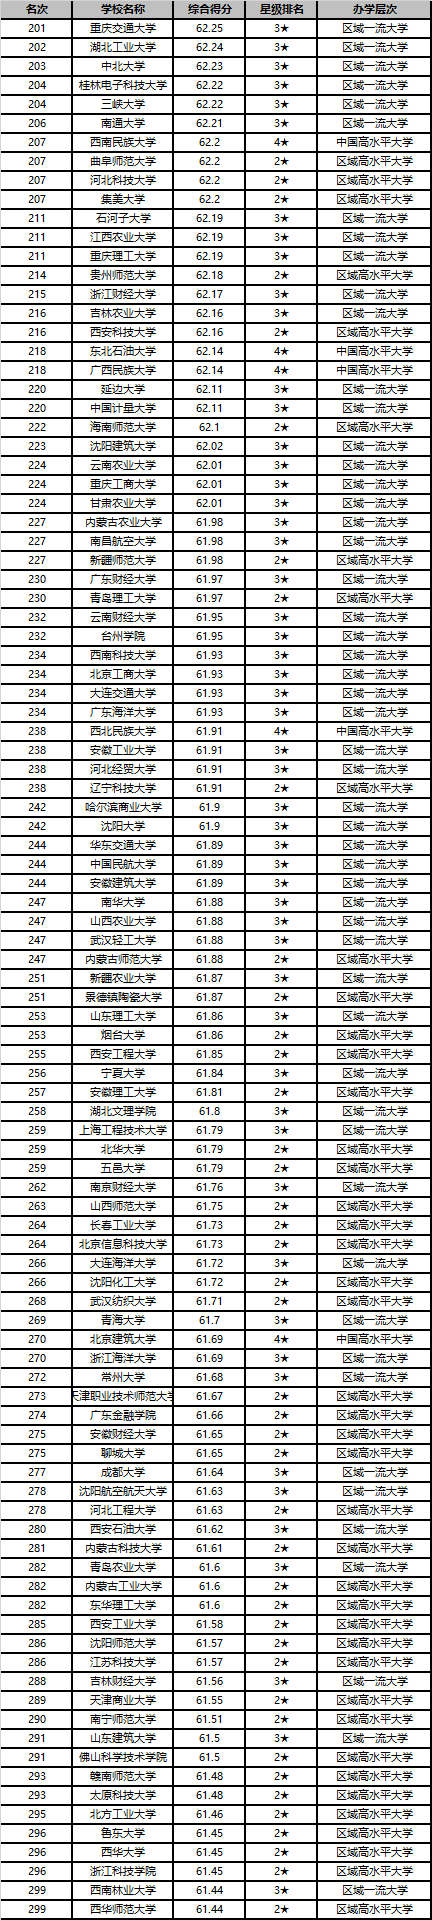 2020中国大学排名1200强发布 北京大学连续13年夺魁